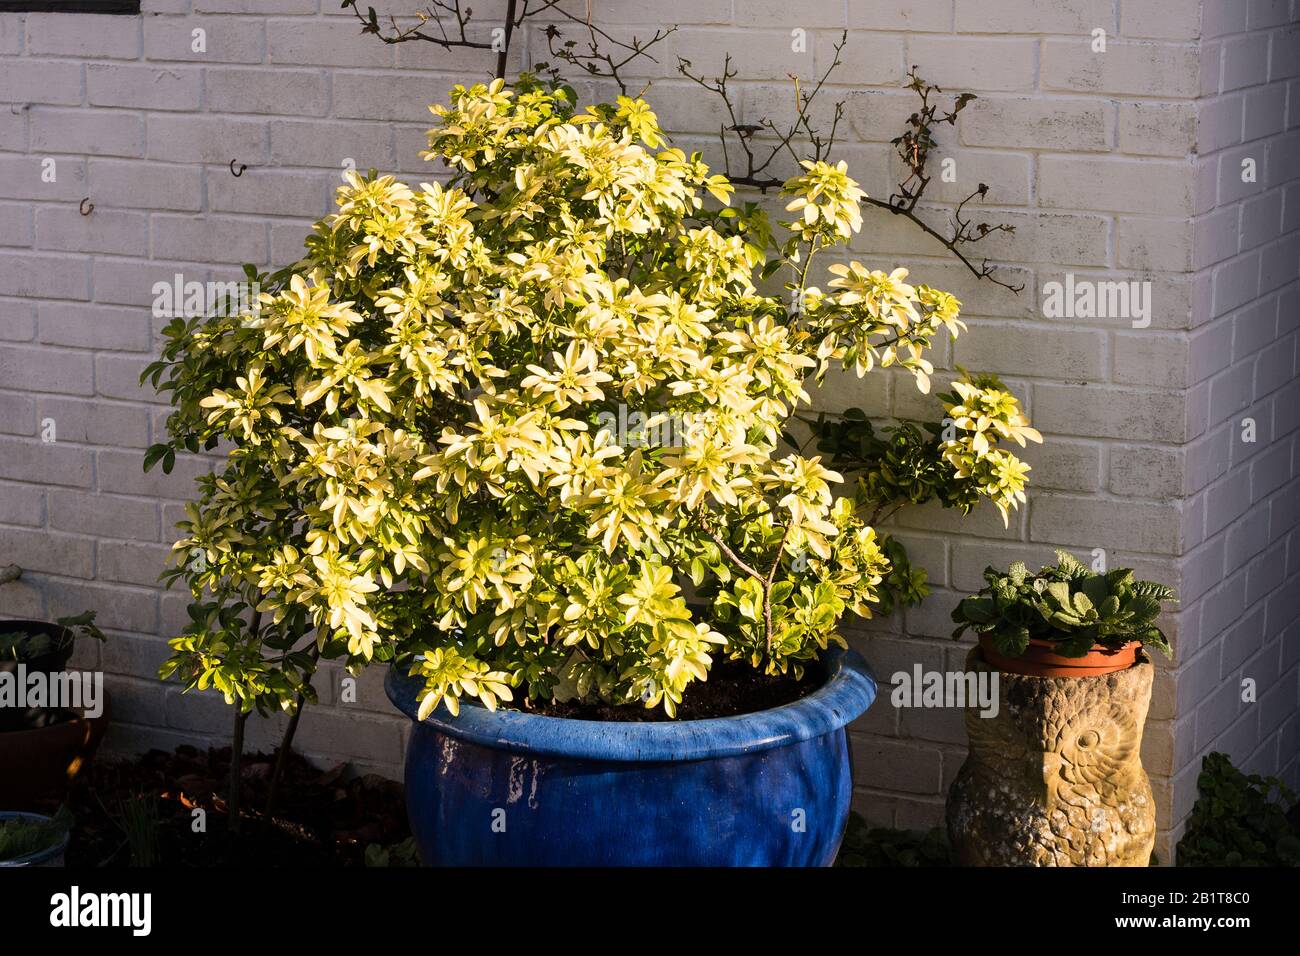 Un exemple brillant d'une plante bien choisie (Choisya ternata Sundance) qui ajoute de la lumière dorée même les jours les plus sombres de l'hiver. Croissance dans un grand semoir bleu Banque D'Images